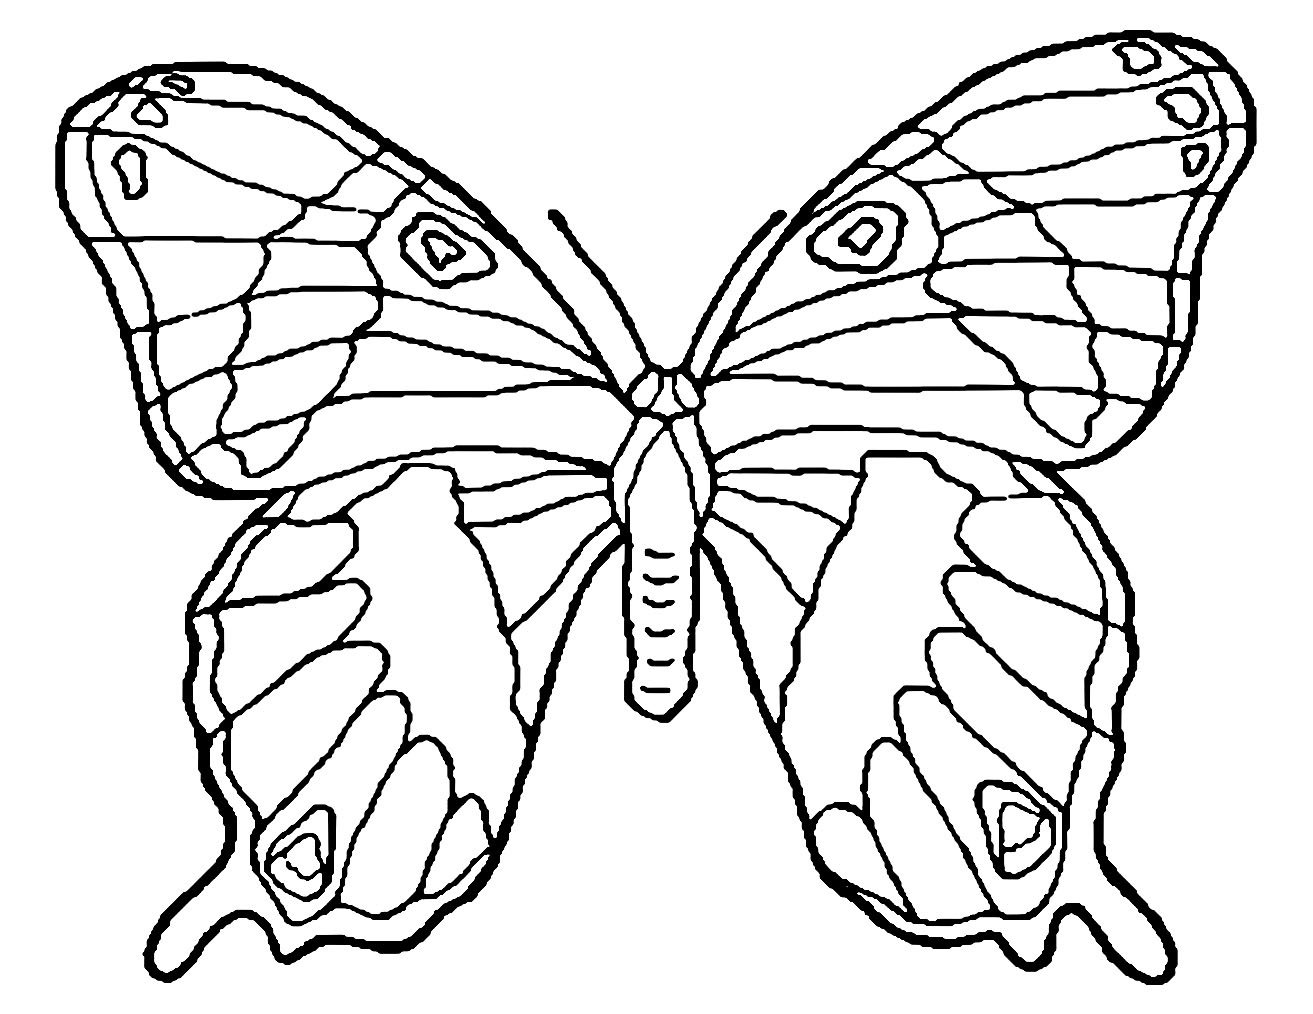 Dibujos para colorear de Mariposa para niños